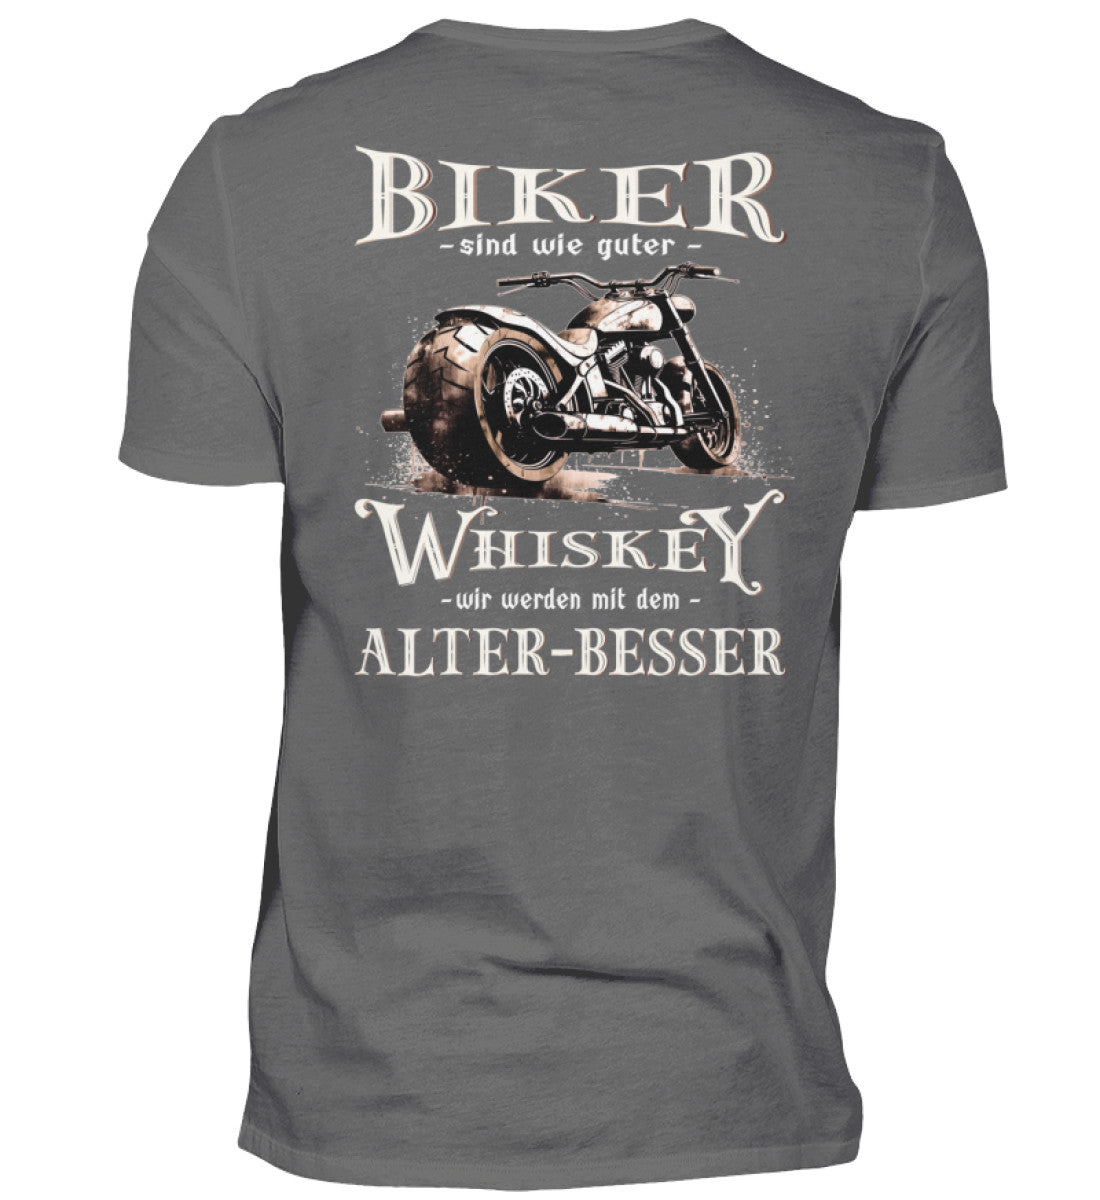 Biker T-Shirt mit einem vintage Aufdruck, Biker sind wie gute Whiskey - wir werden mit dem Alter besser mit Back Print in dunkelgrau. 